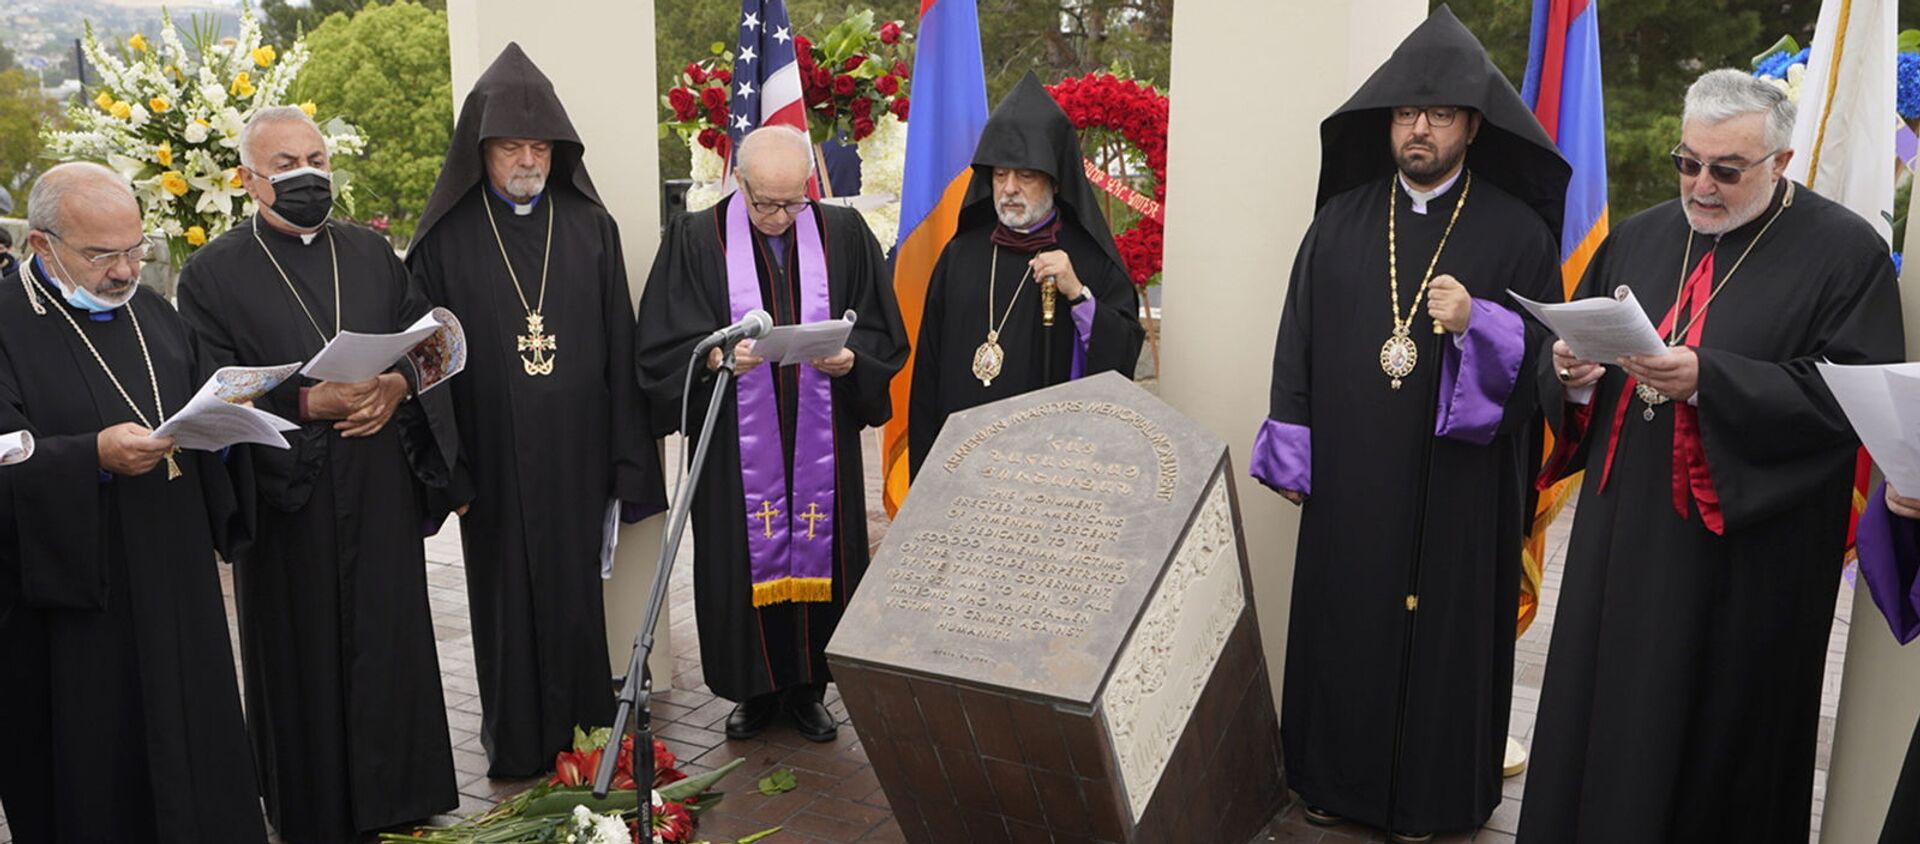 Религиозные лидеры поют на церемонии памяти жертв Геноцида армян у монумента Геноцида армян в Монтебелло (24 апреля 2021). Калифорния - Sputnik Արմենիա, 1920, 25.04.2021